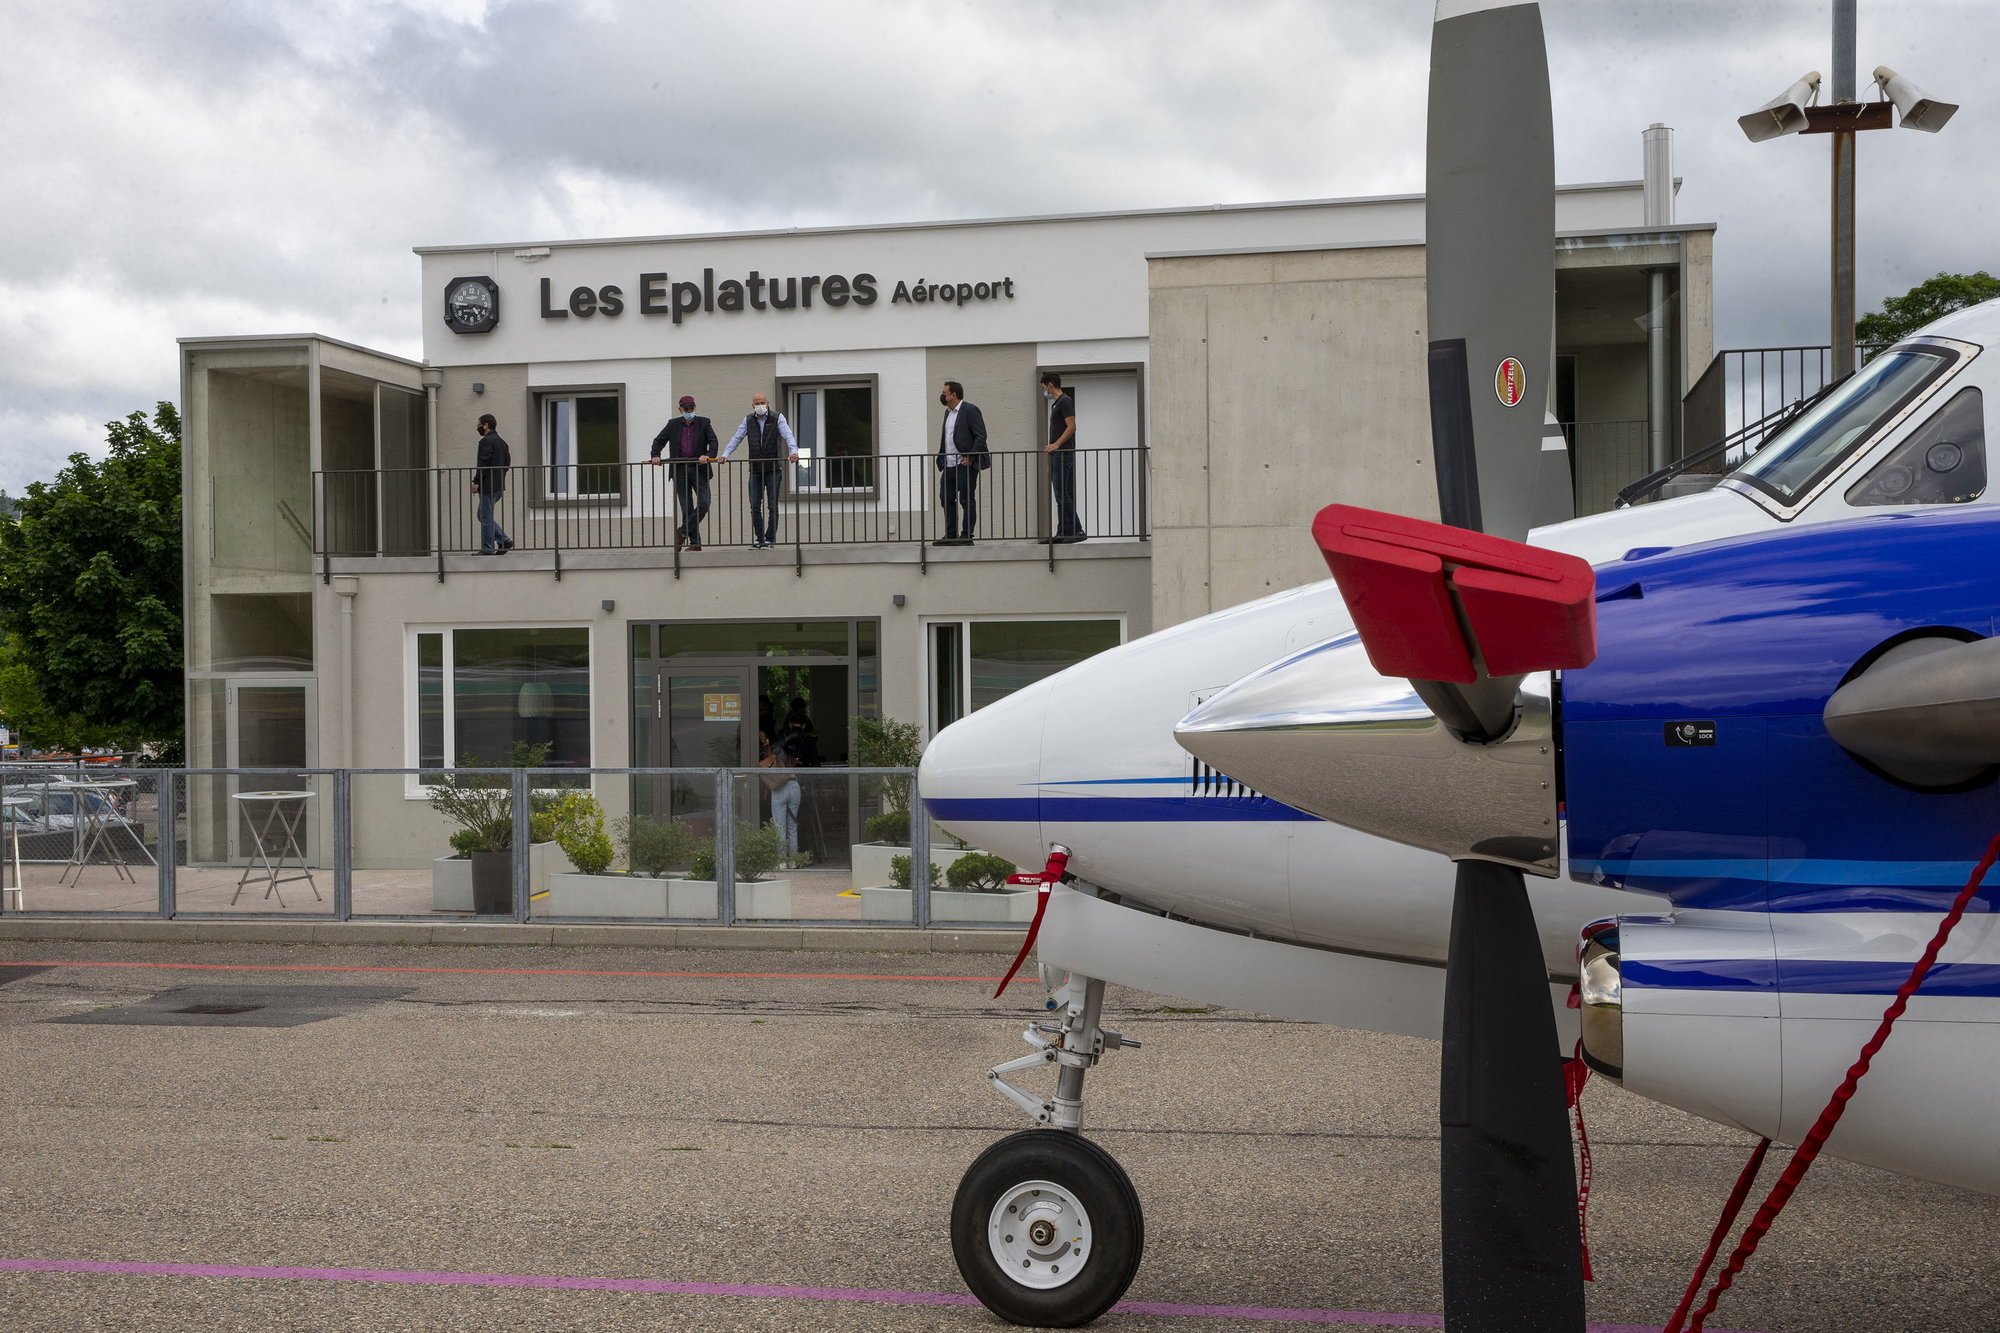 L'inauguration officielle du terminal de l'aéroport des Eplatures a eu lieu ce jeudi 24 juin.